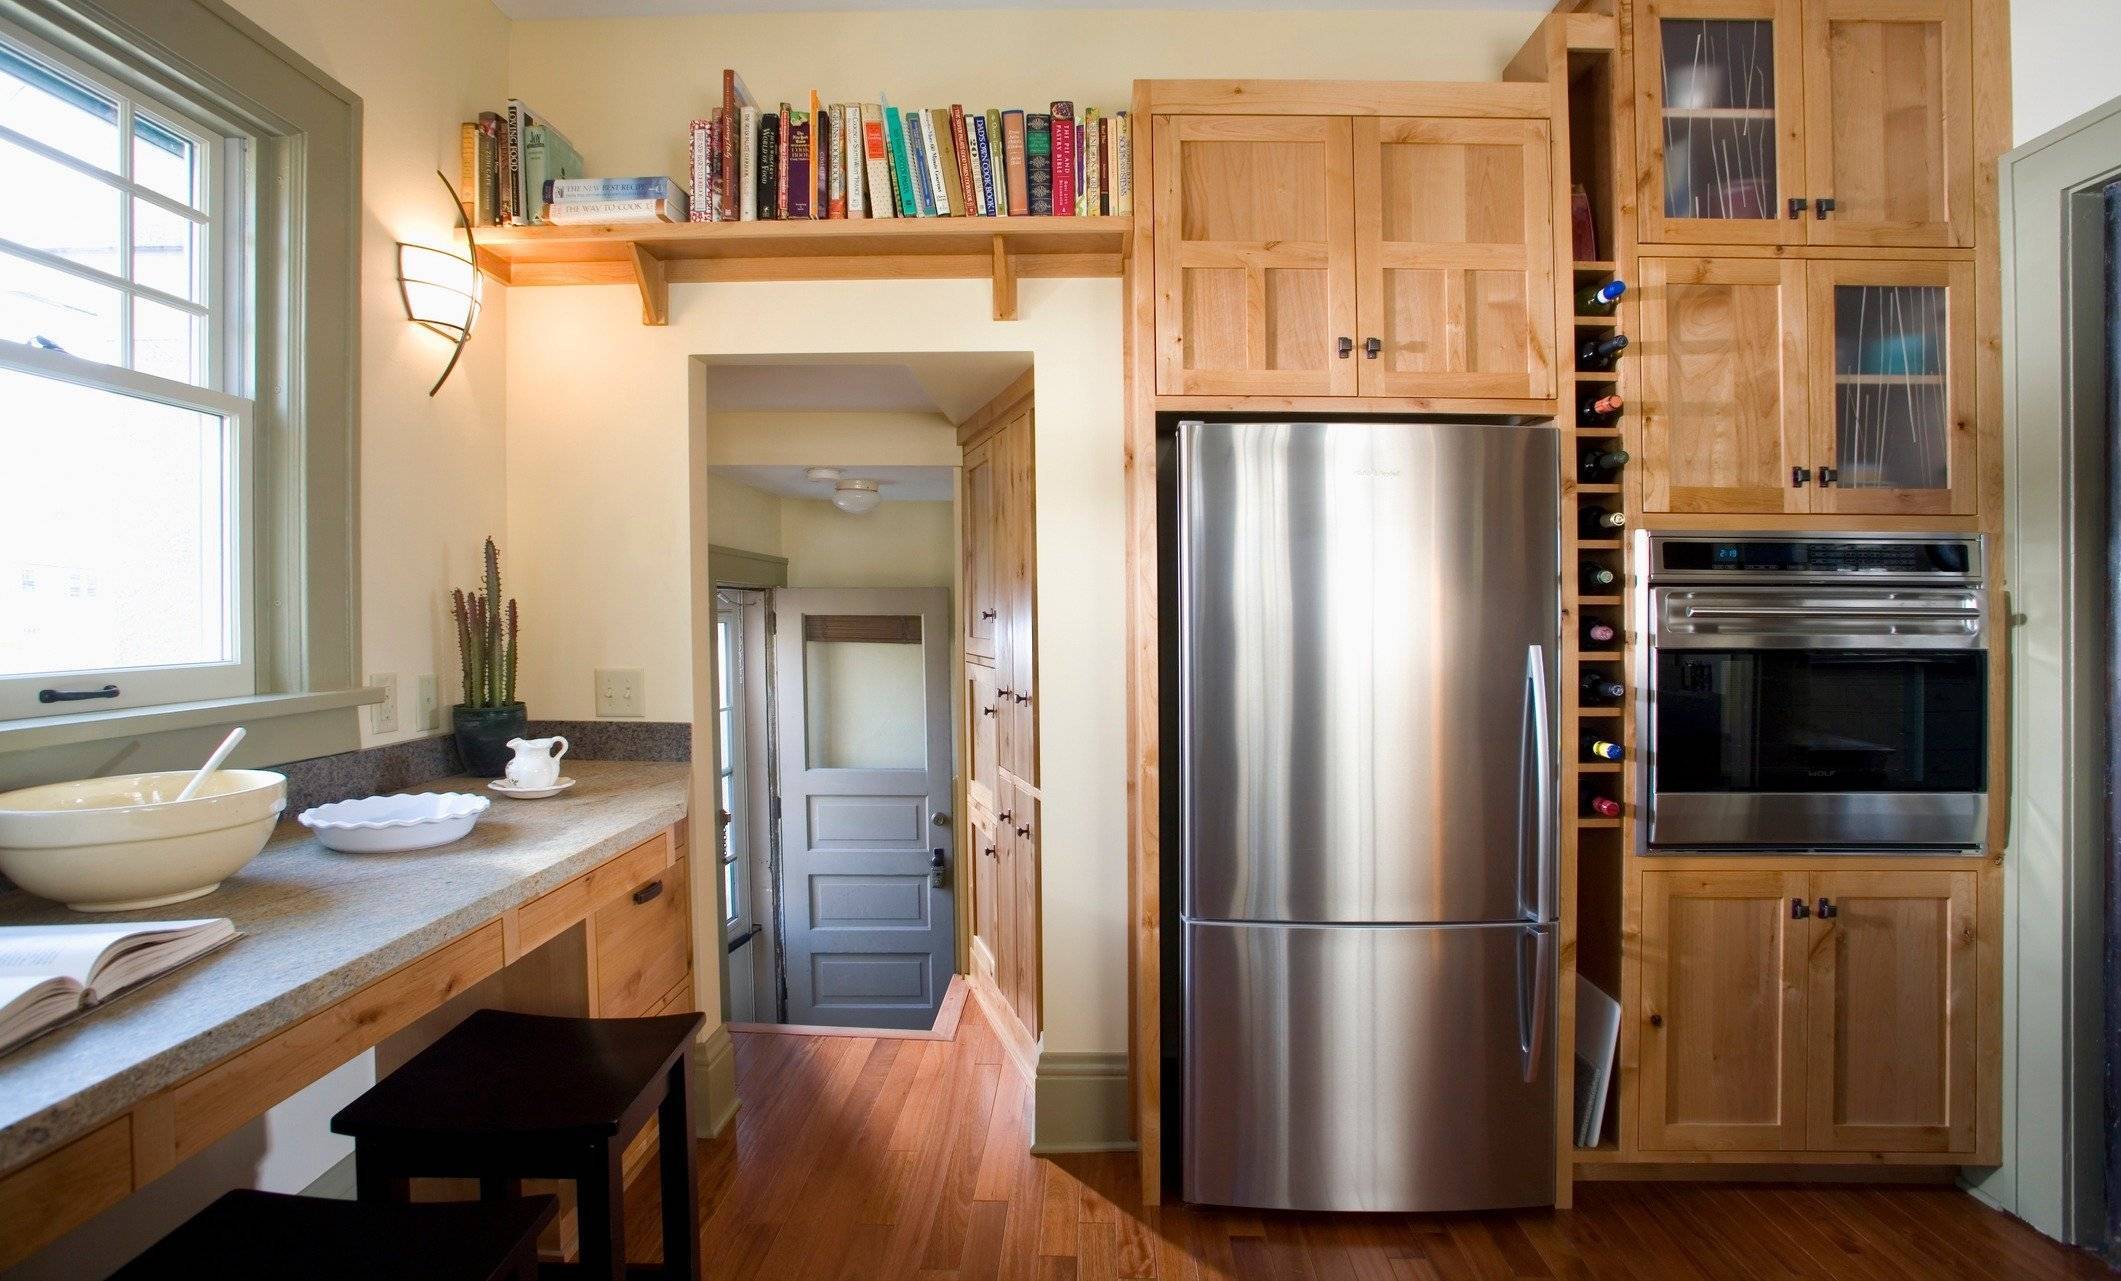 Как разместить холодильник на кухне и не нанести вред ему и другим приборам